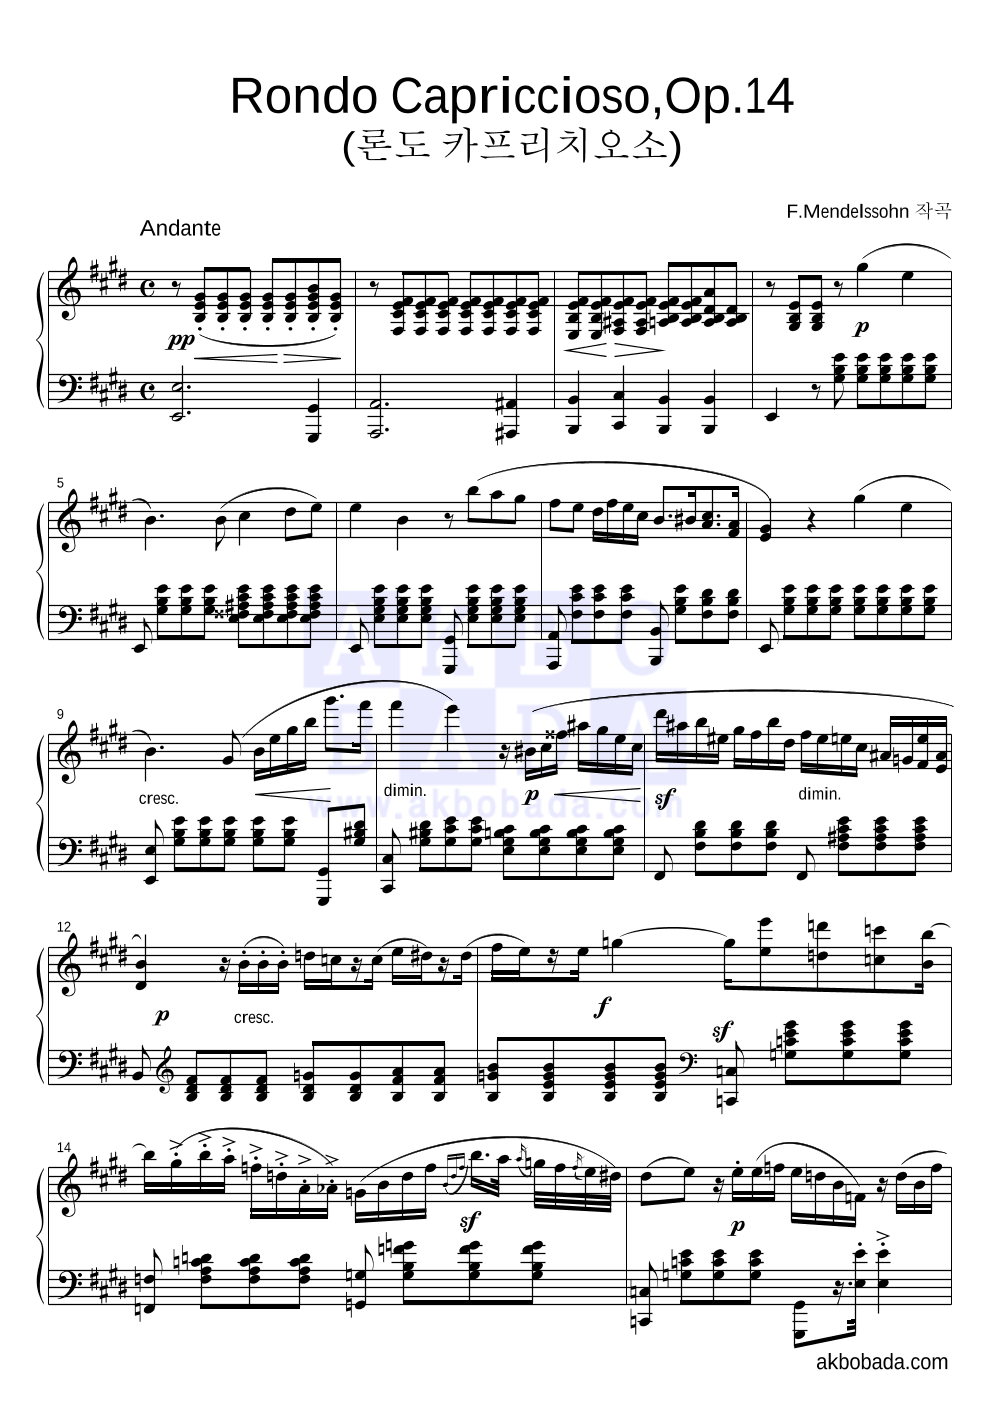 멘델스존 - Rondo Capriccioso,Op.14 (론도 카프리치오소) 피아노 2단 악보 